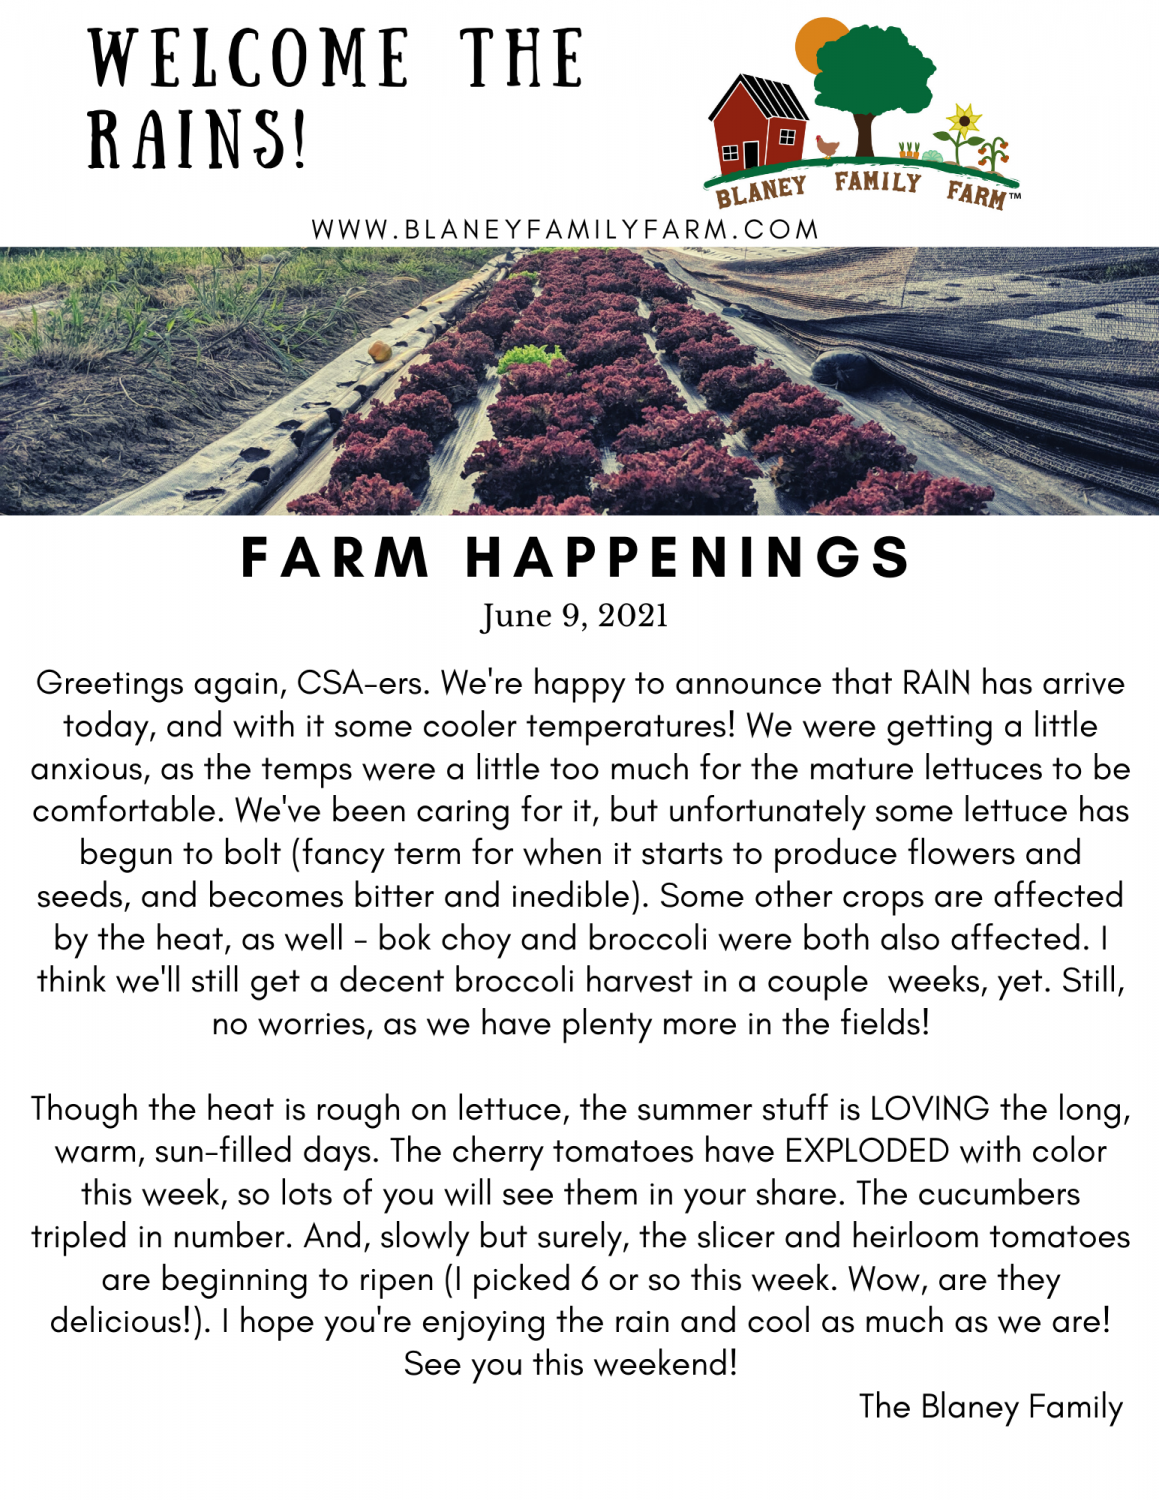 Previous Happening: Farm Happenings for June 11, 2021